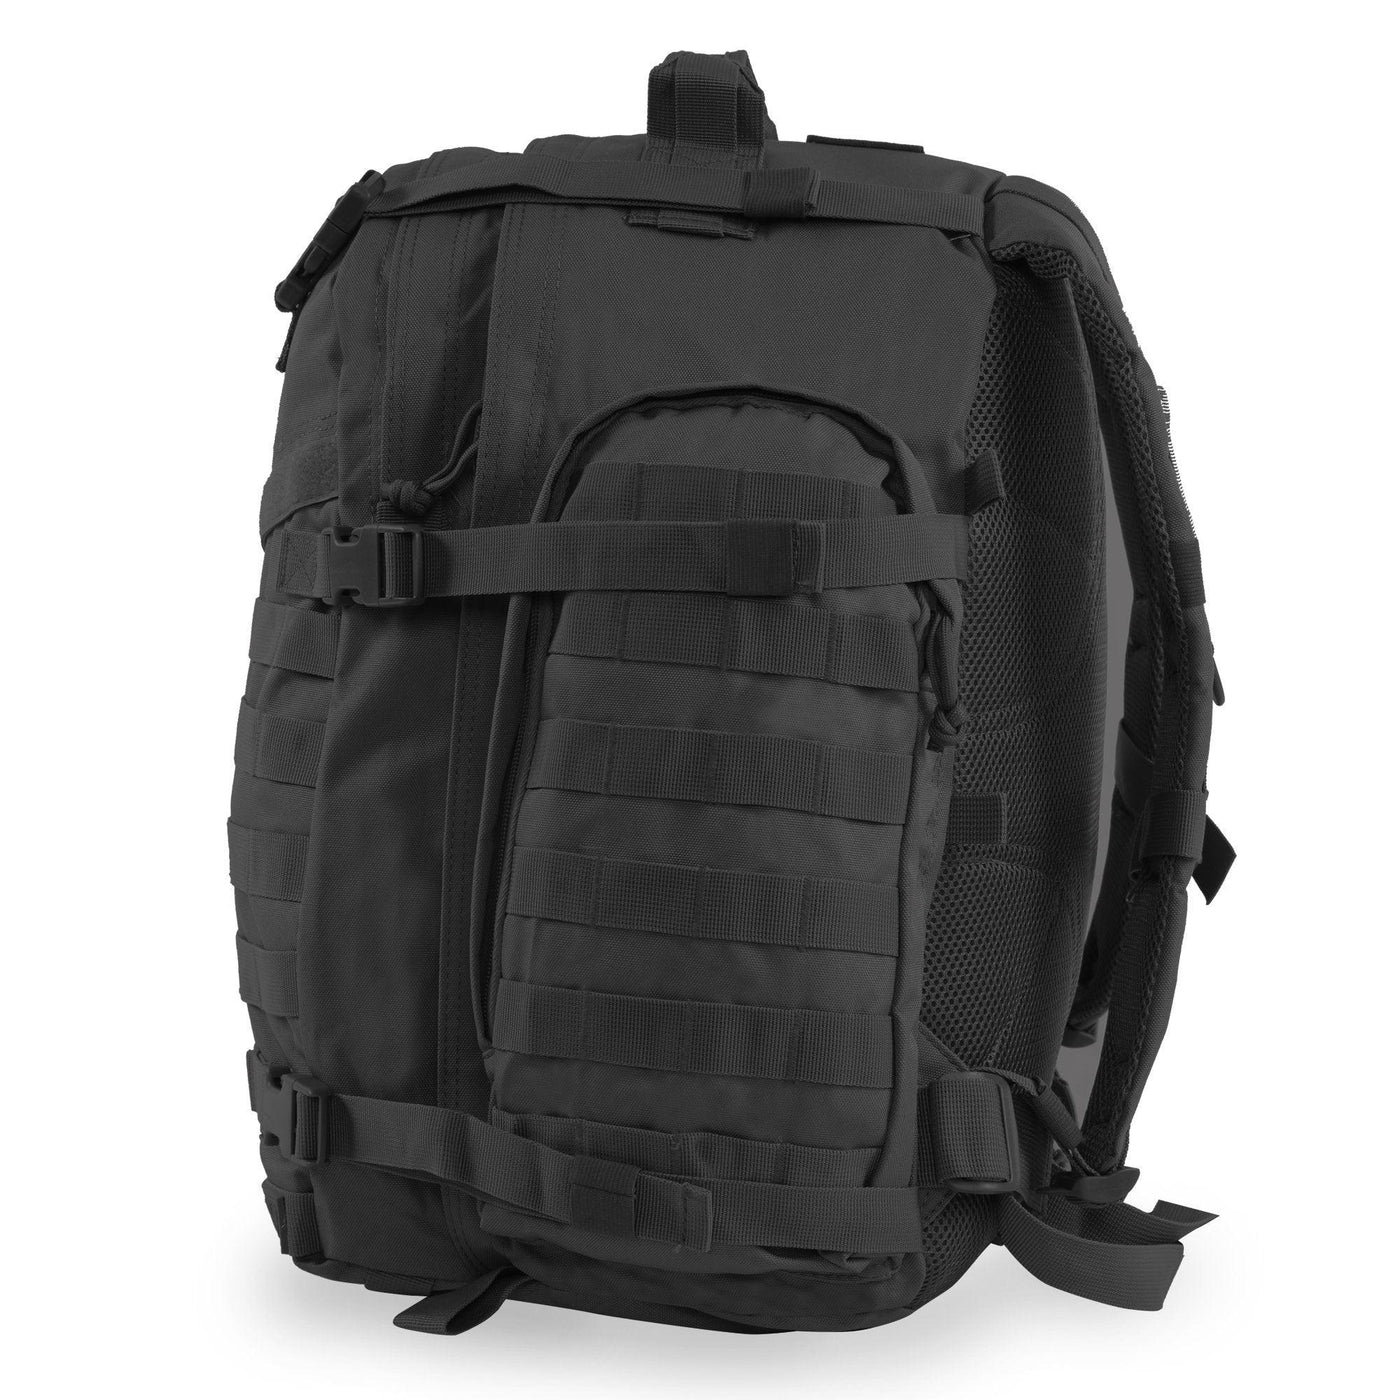 Large 3 Day Backpack | Black Backpack | Black Go Bag | Hiking | Camping   #color_black